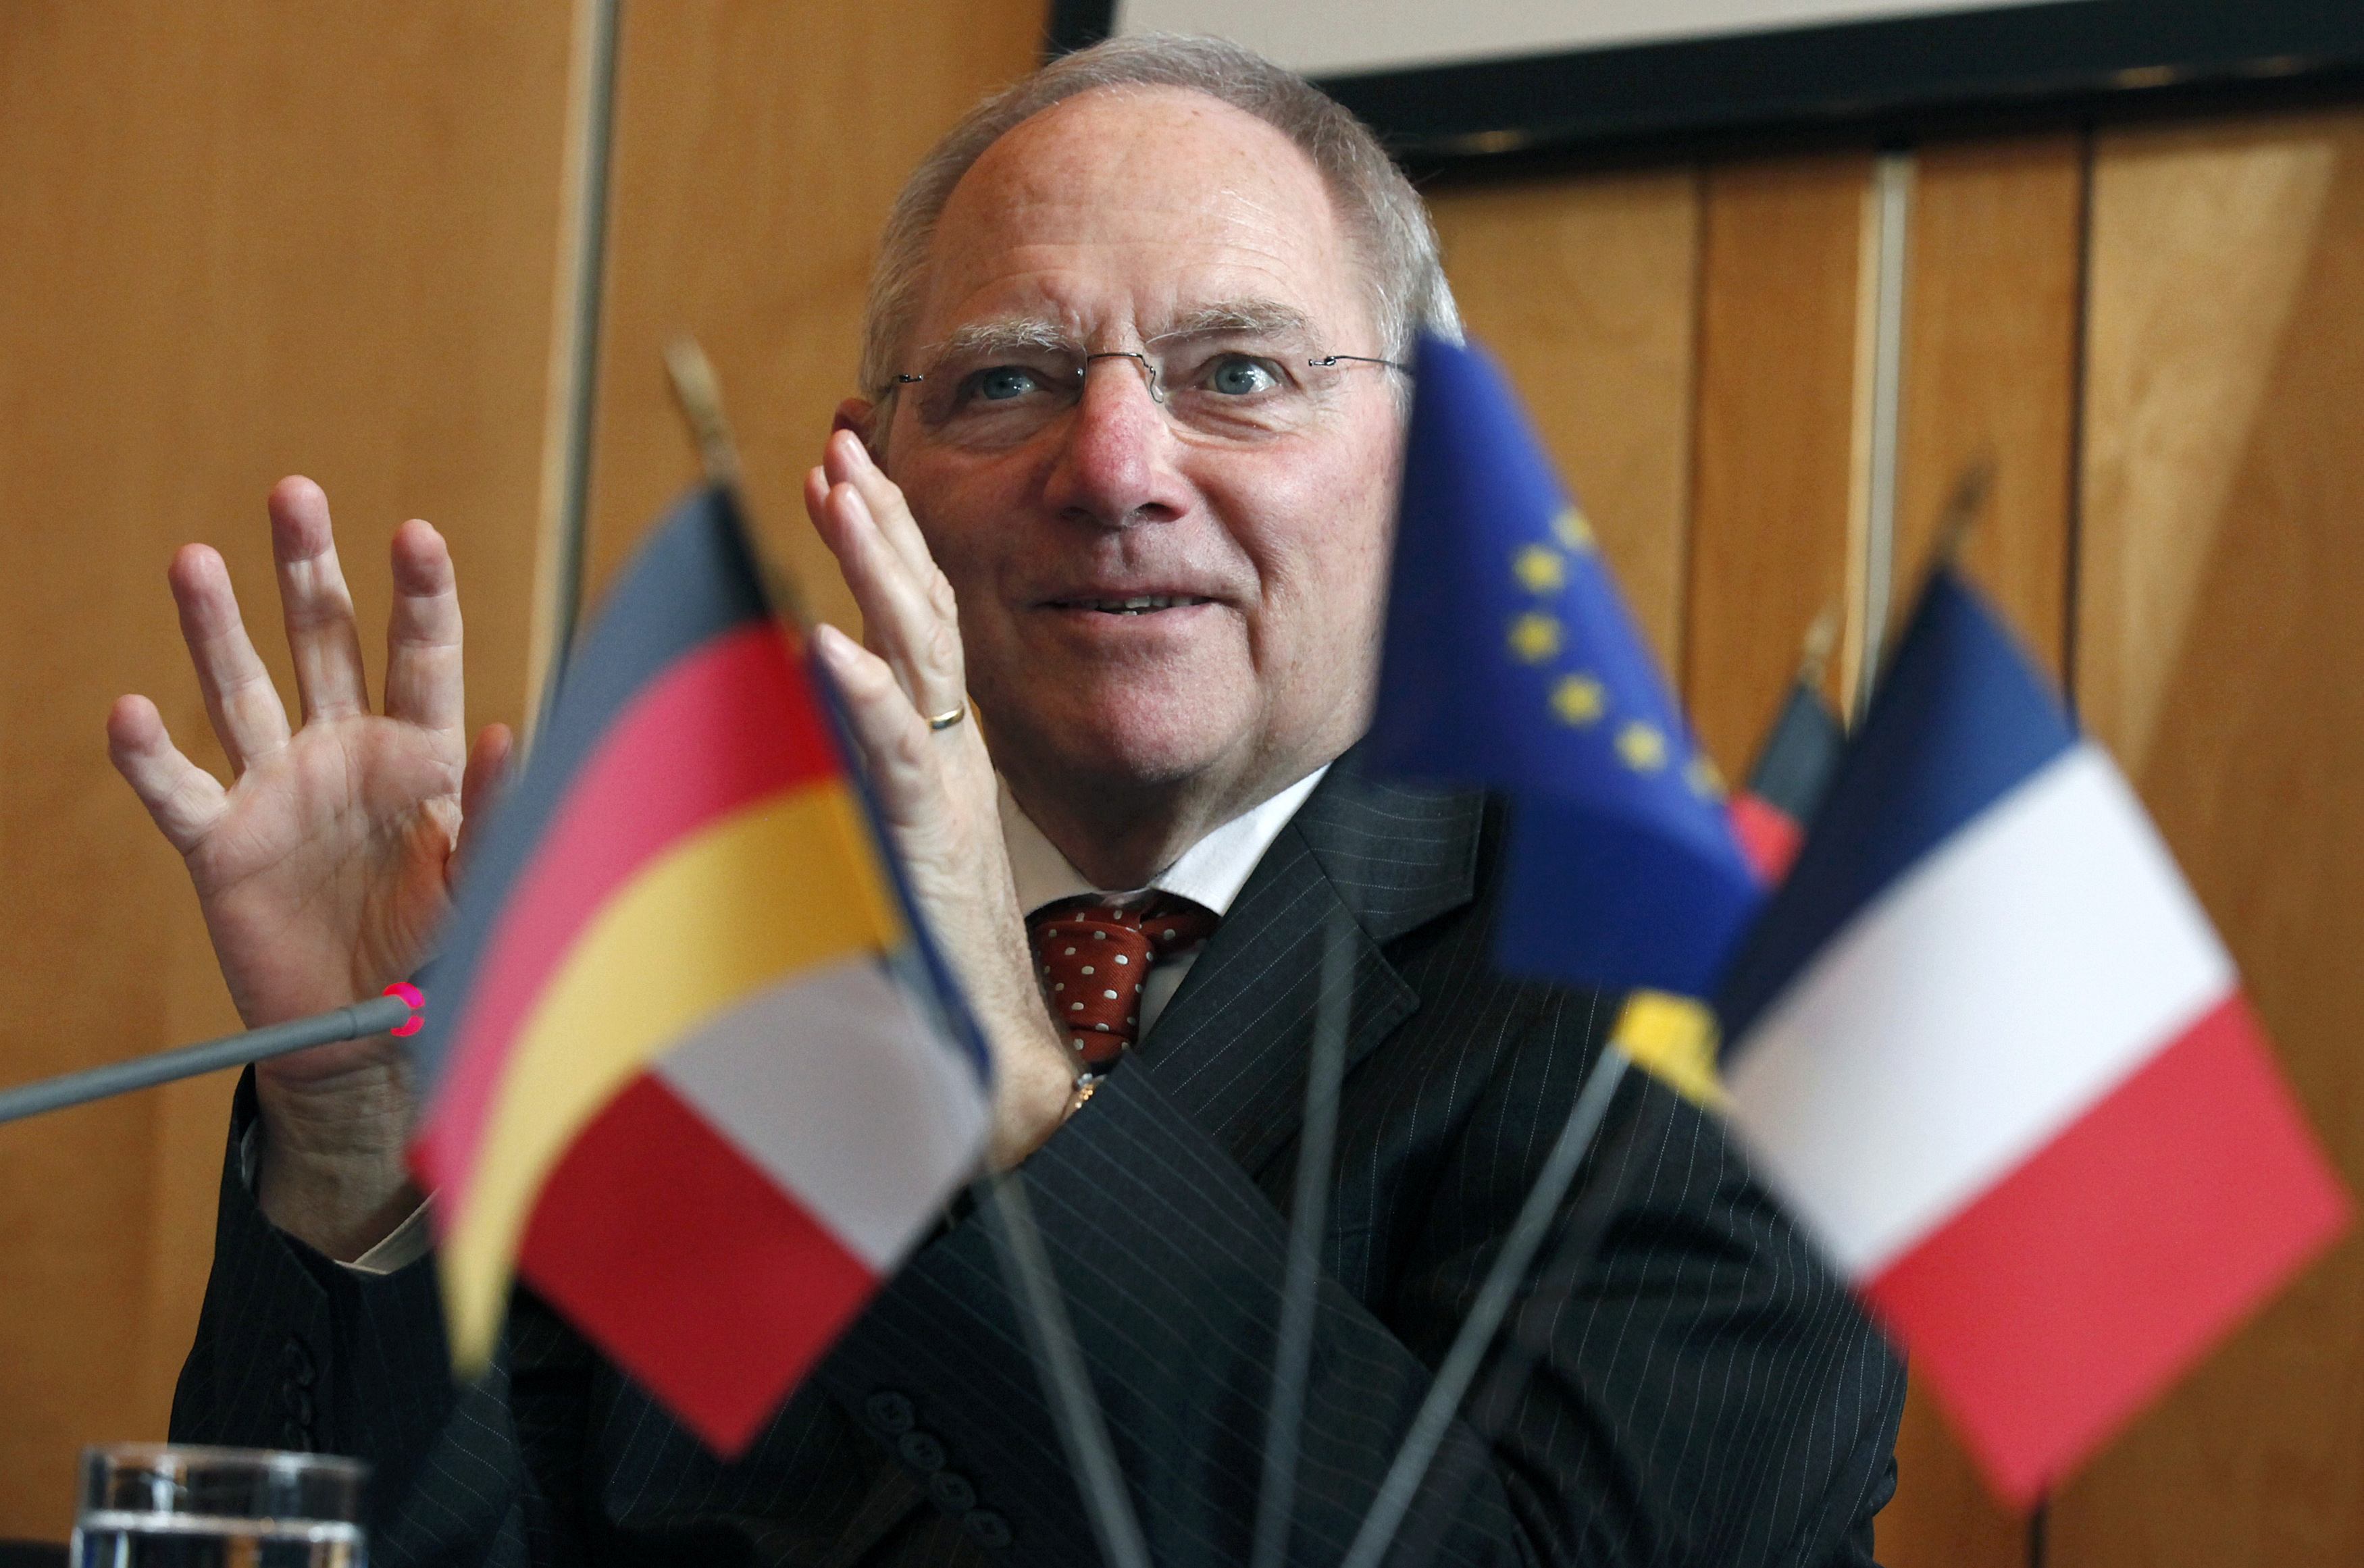 Γερμανικές εκλογές: Ο Σόιμπλε έκλεισε τα 75 του χρόνια και.. θα συνεχίσει να είναι υπουργός Οικονομικών